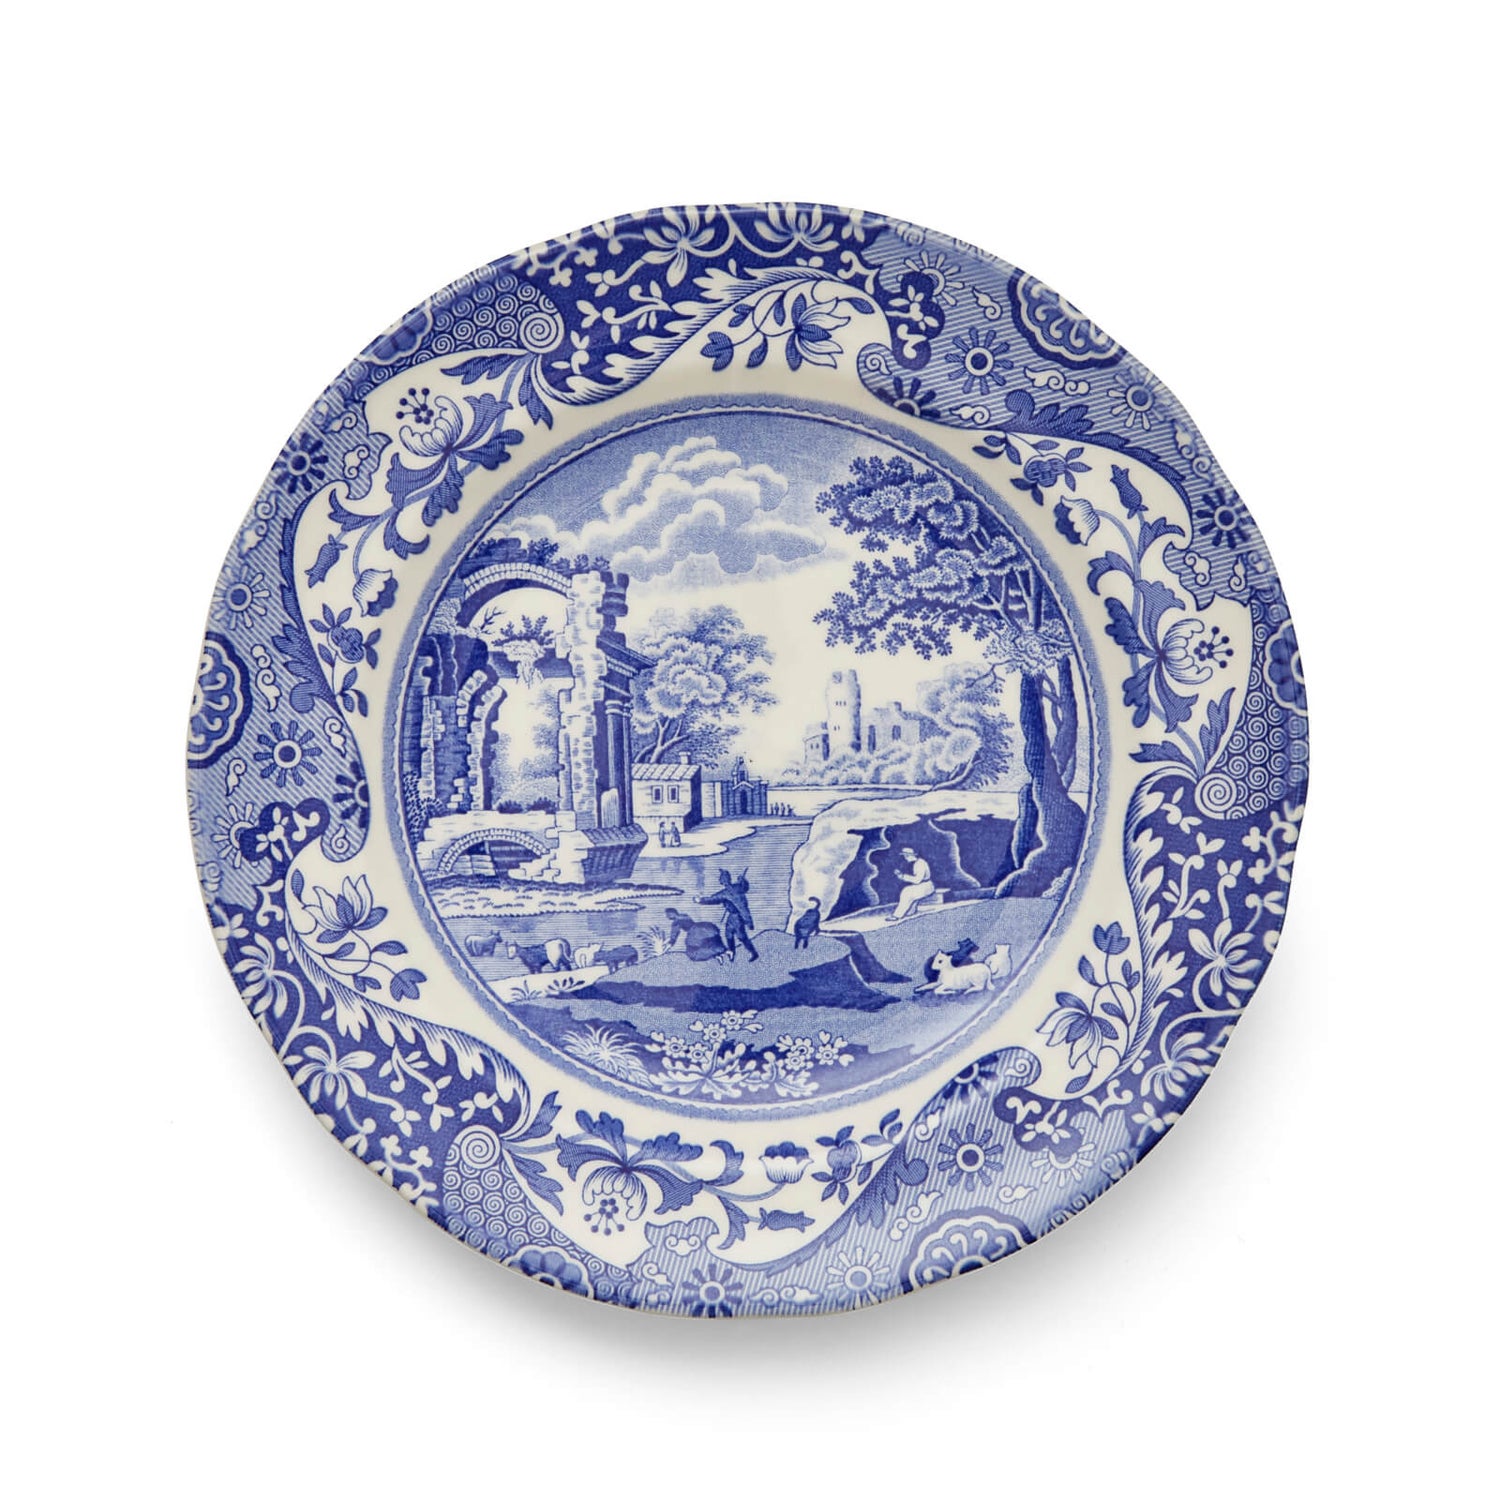 Spode Blue Italian Side Plate - 20cm (Set of 4)